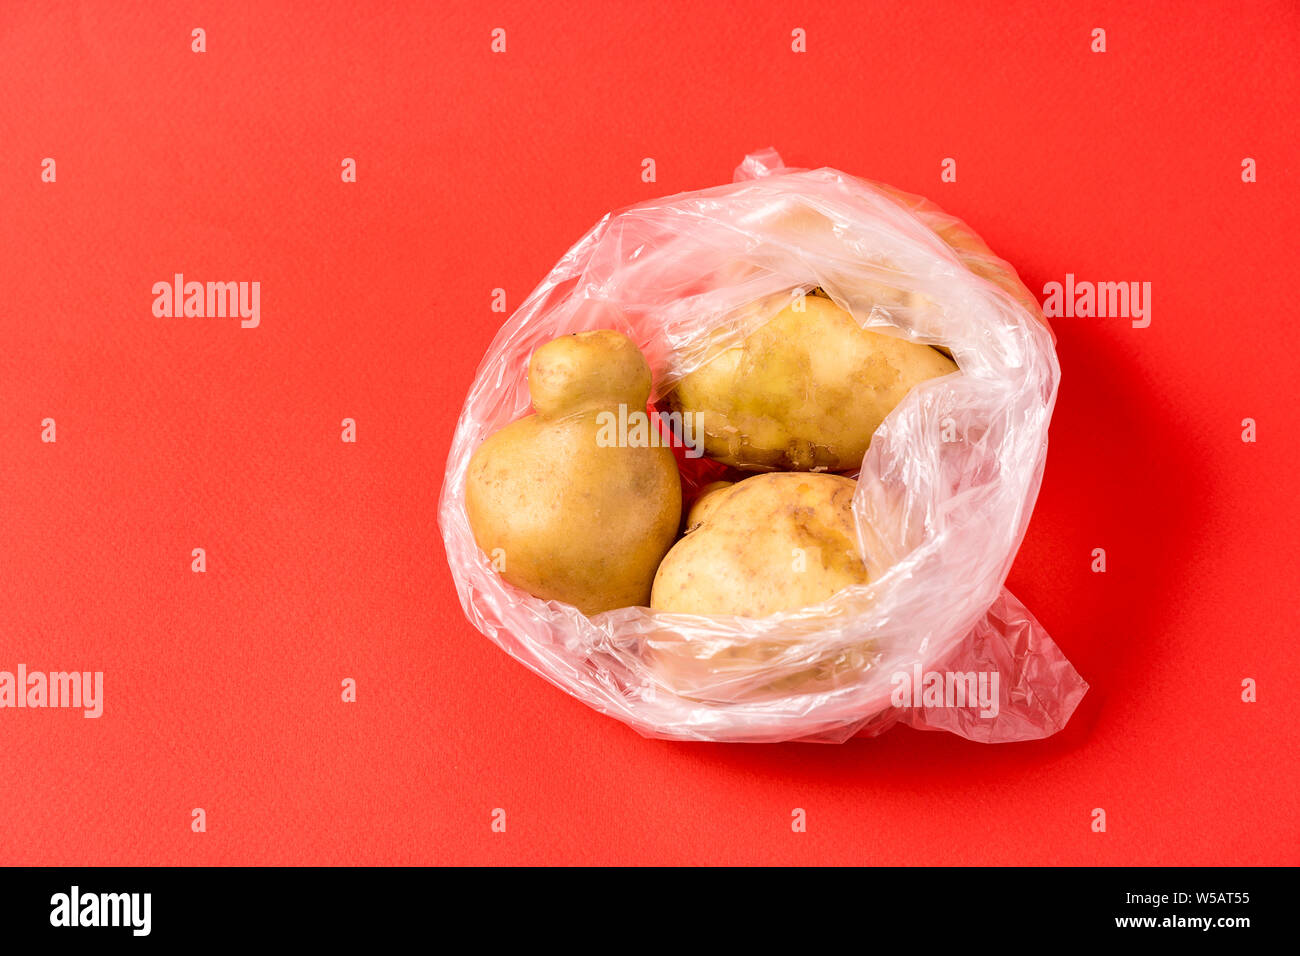 Vue avant les pommes de terre dans un sac plastique sur fond rouge. Image montre le harmness à l'aide de sacs de stockage de l'alimentation artificielle. Banque D'Images